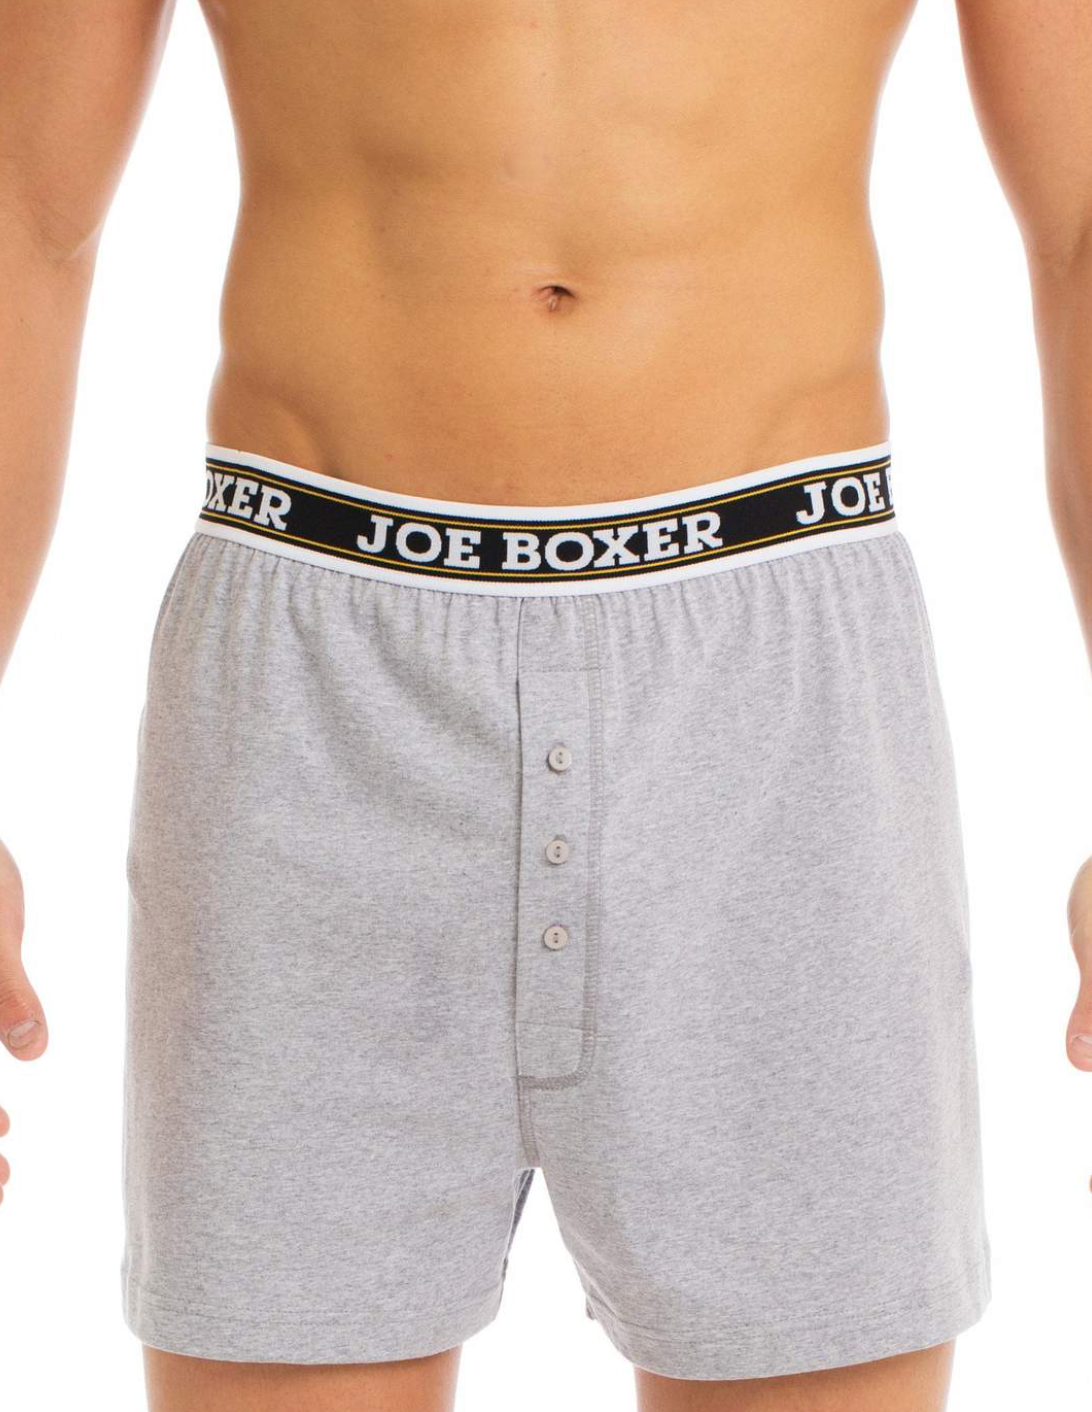 loose boxer